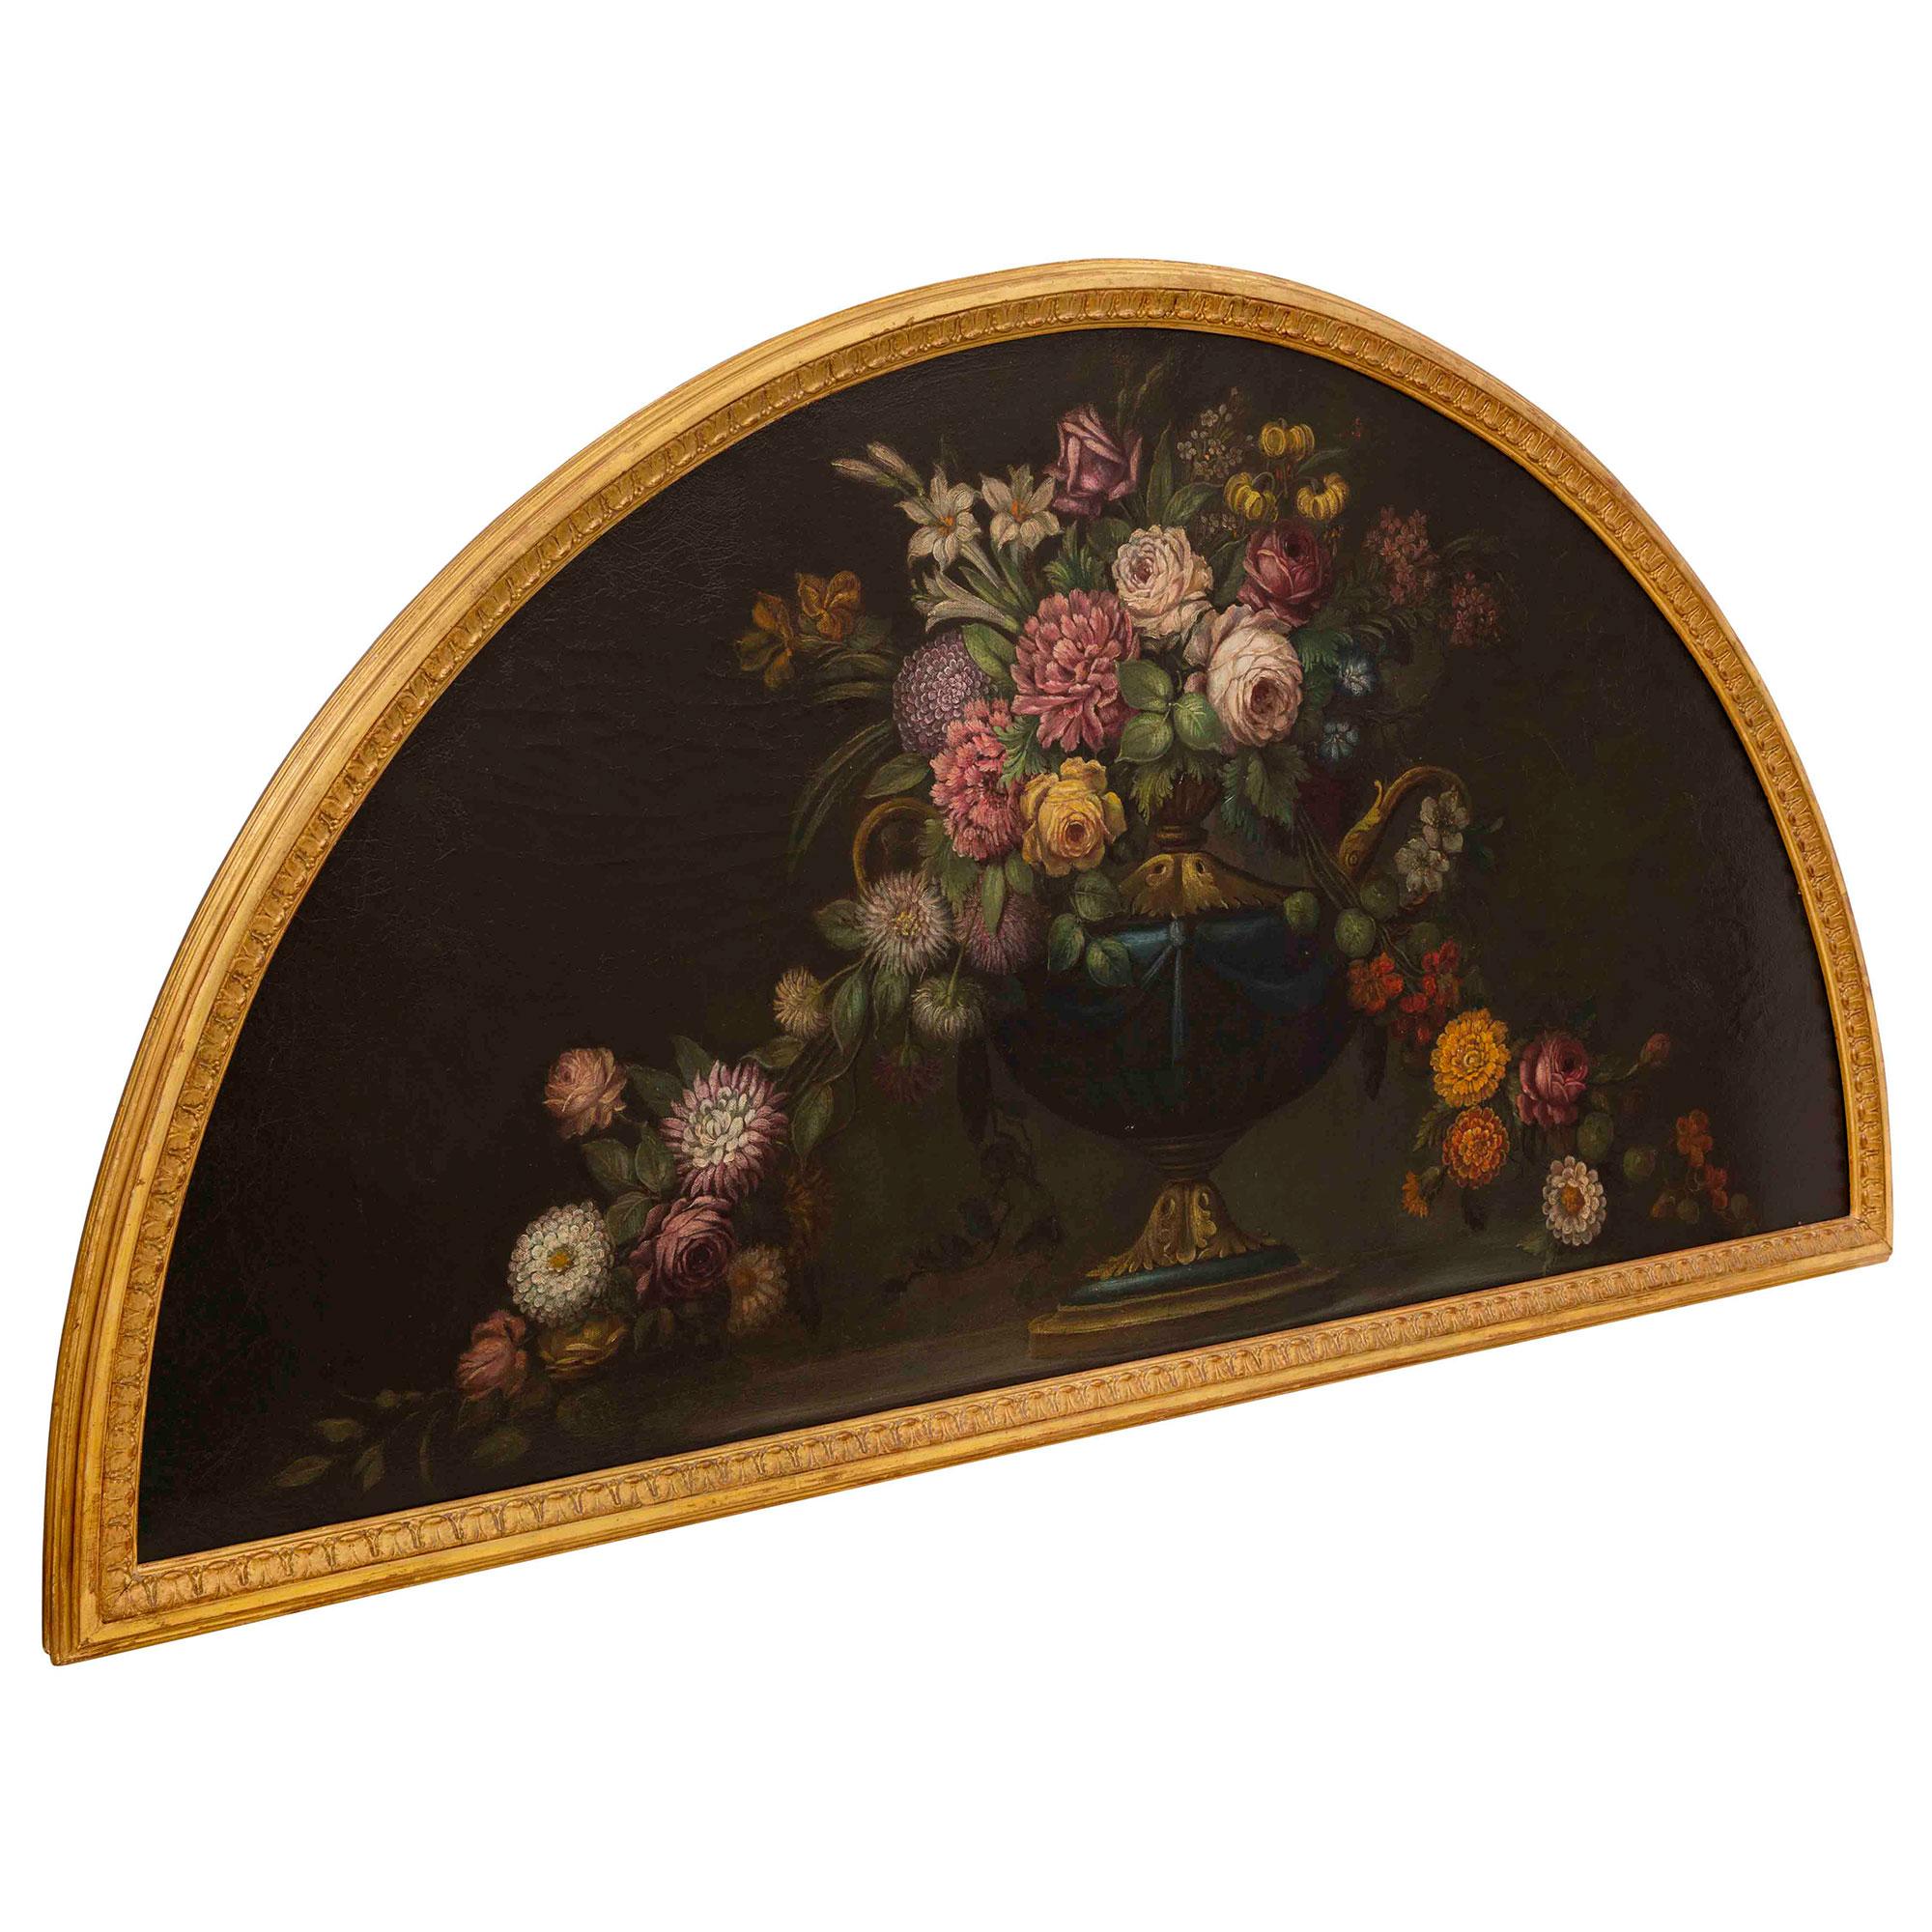 Superbe peinture de nature morte de style Louis XVI du 19ème siècle. Le tableau est placé dans son cadre d'origine en bois doré avec une élégante bordure mouchetée et un motif de feuillage finement sculpté. Le tableau affiche des couleurs vives,